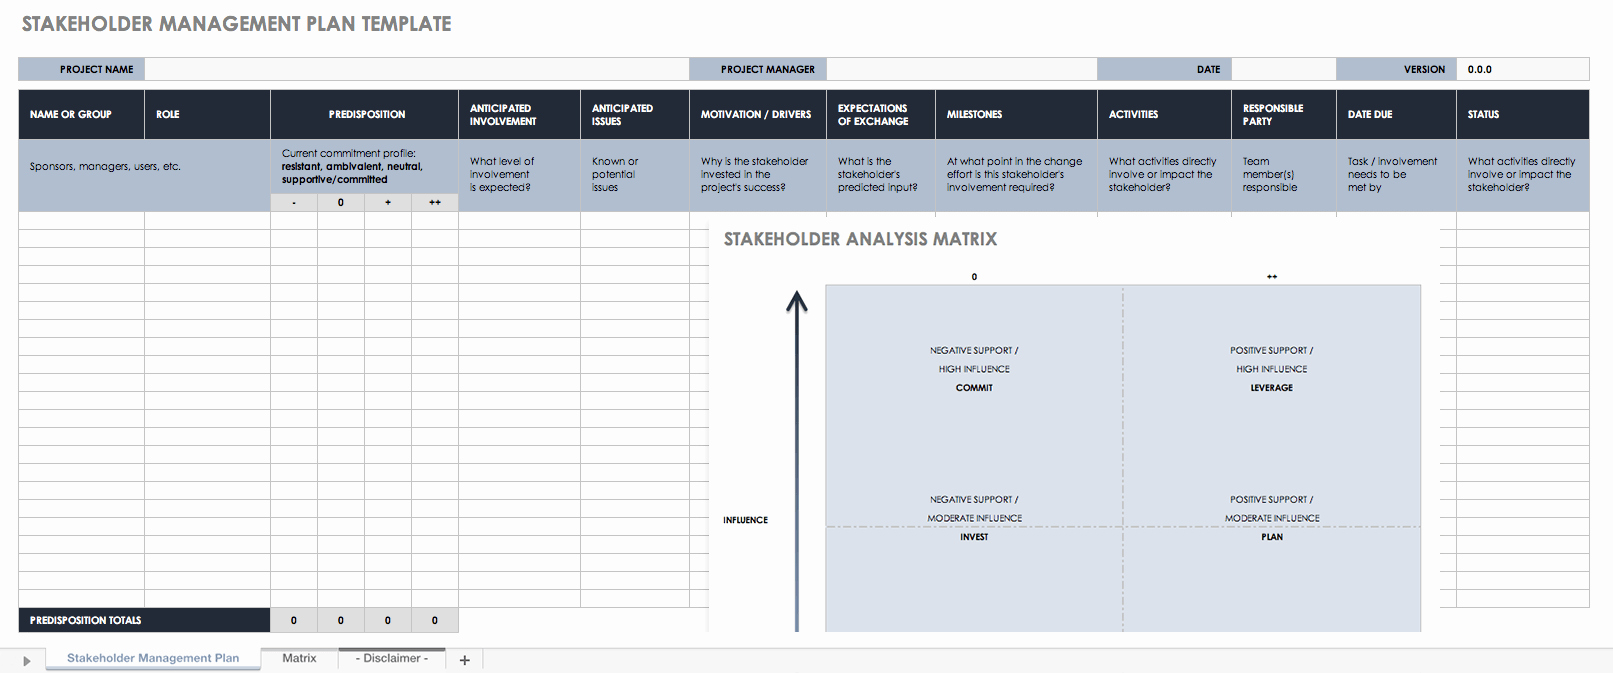 Stakeholder Management Plan Template Inspirational Free Stakeholder Analysis Templates Smartsheet